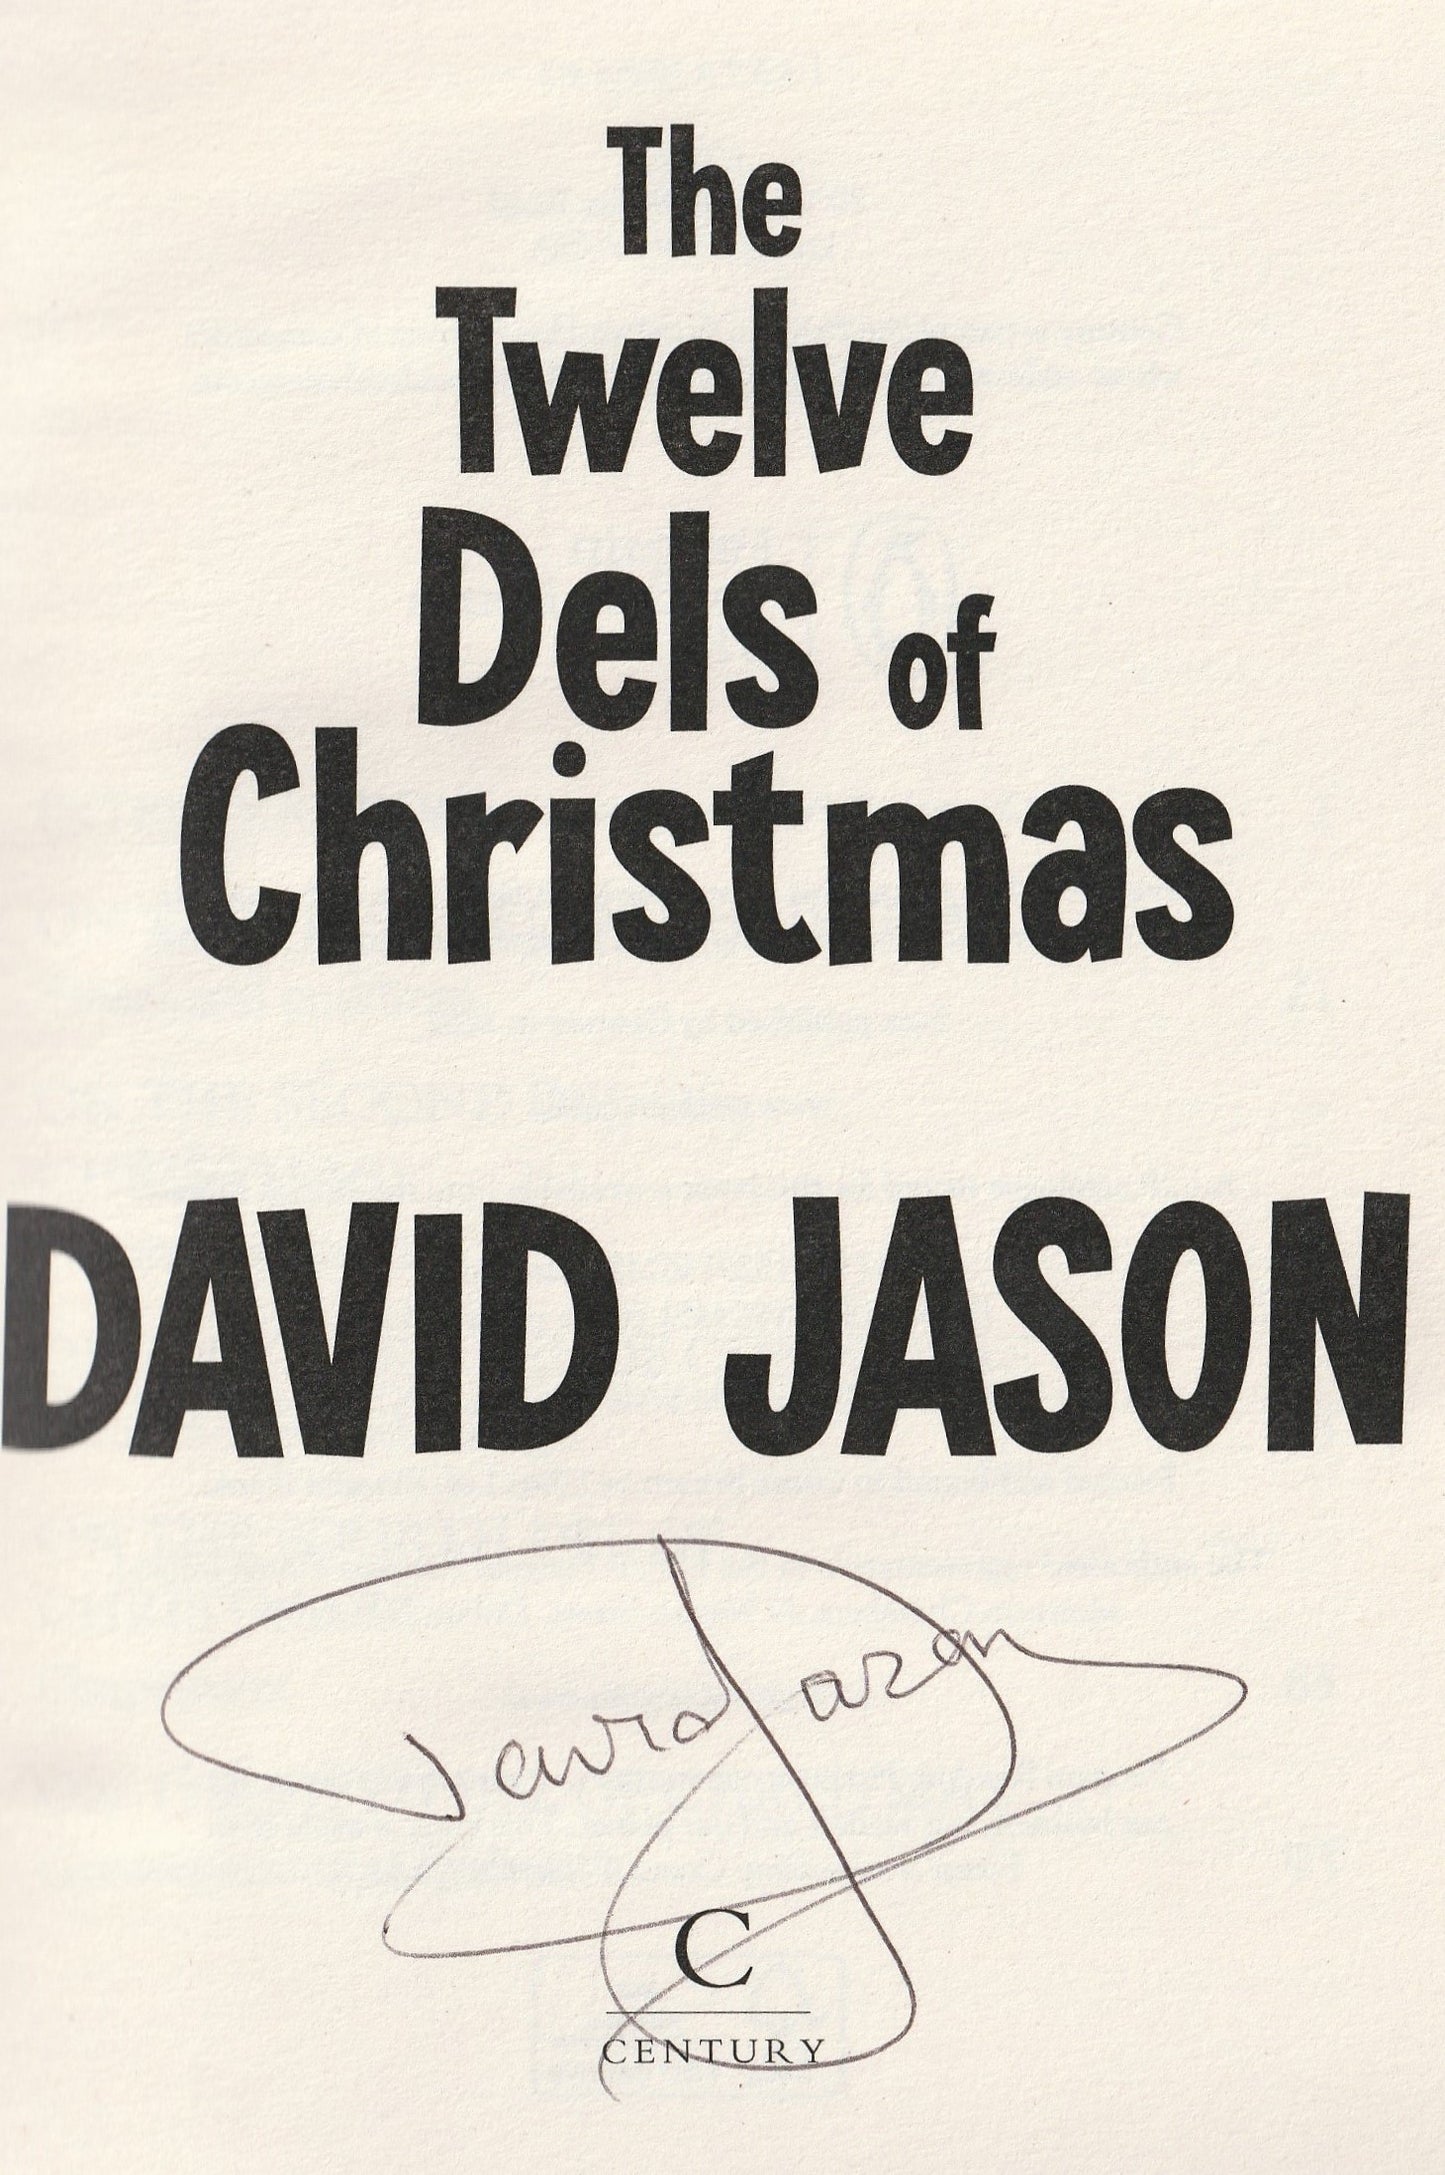 David Jason